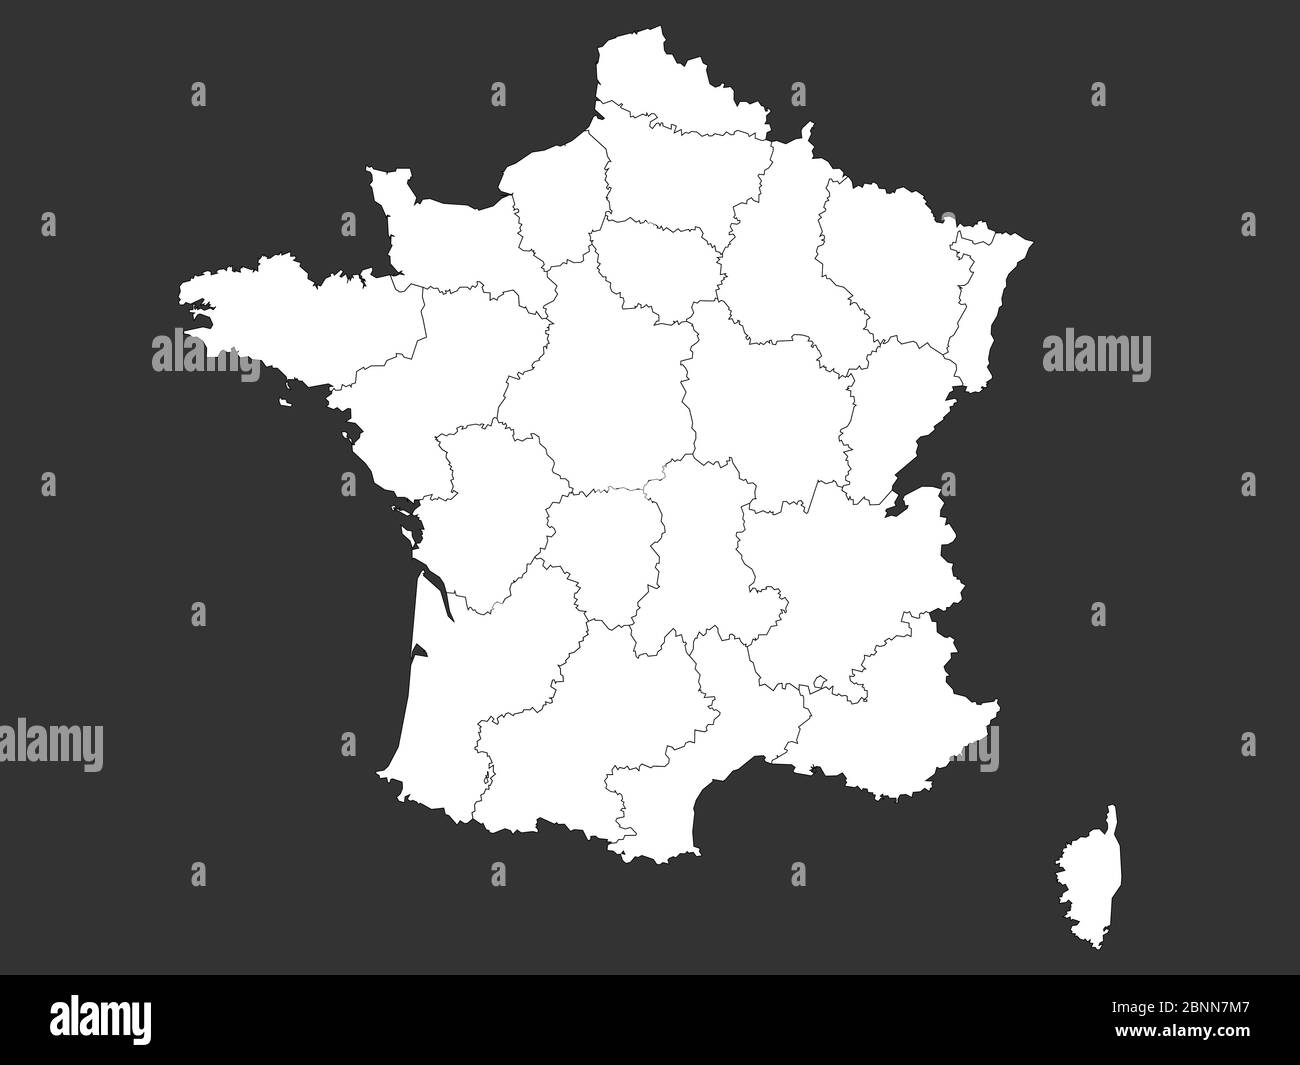 Frankreich Karte mit Grenzen Umriss Vektor-Illustration. Grau, weiß. Stock Vektor